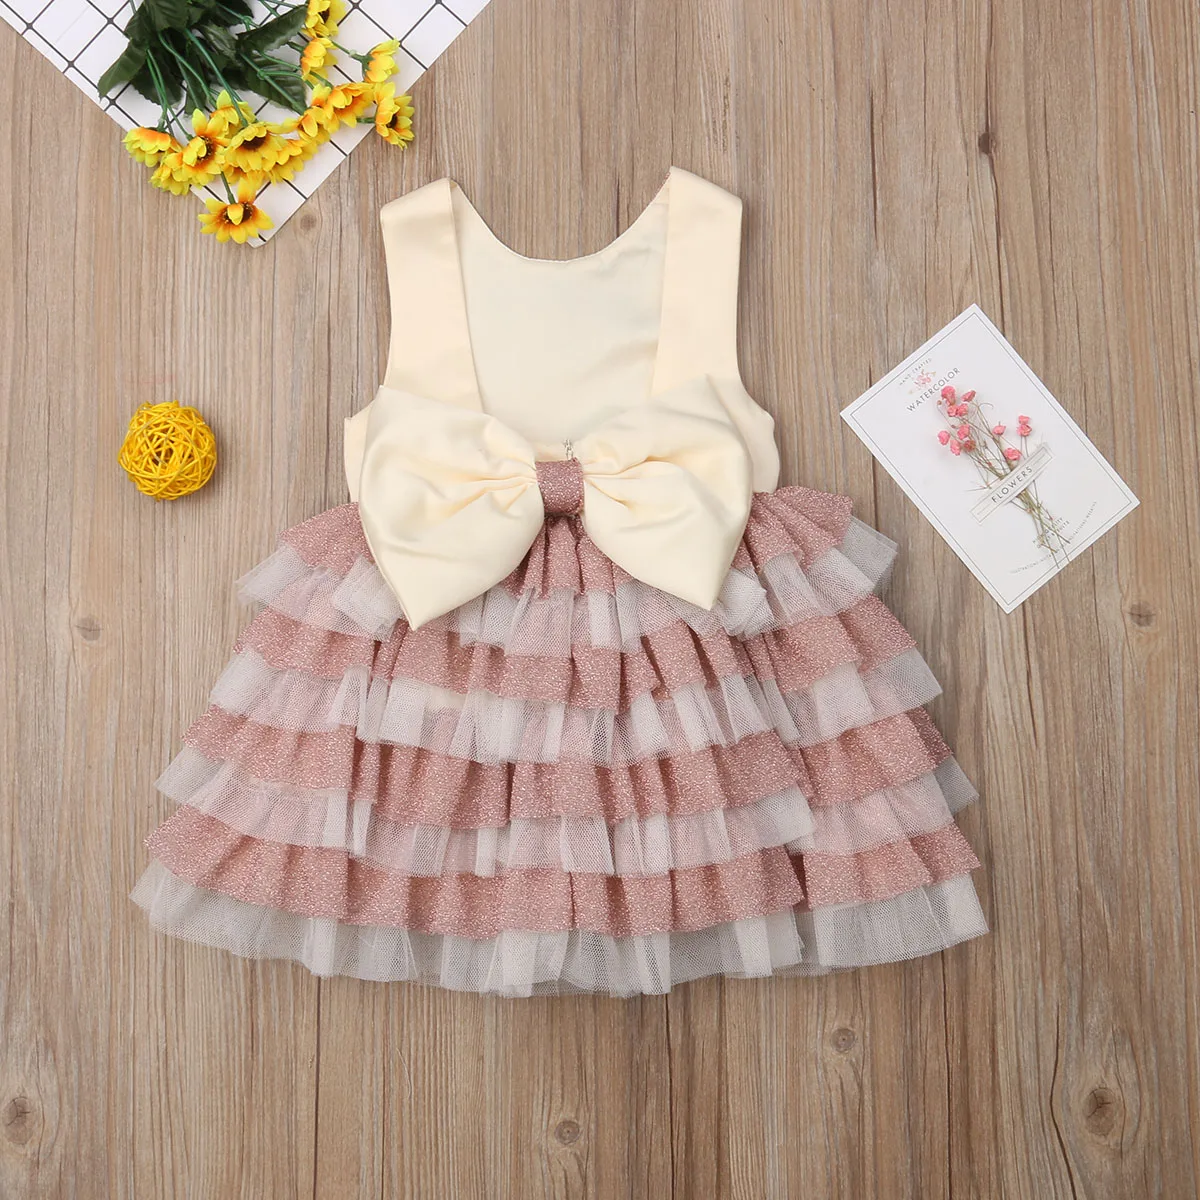 Pudcoco/платье для девочек; От 6 месяцев до 5 лет платье принцессы для маленьких девочек; праздничное платье-пачка для маленьких девочек; торжественное платье для торжеств, свадьбы, дня рождения